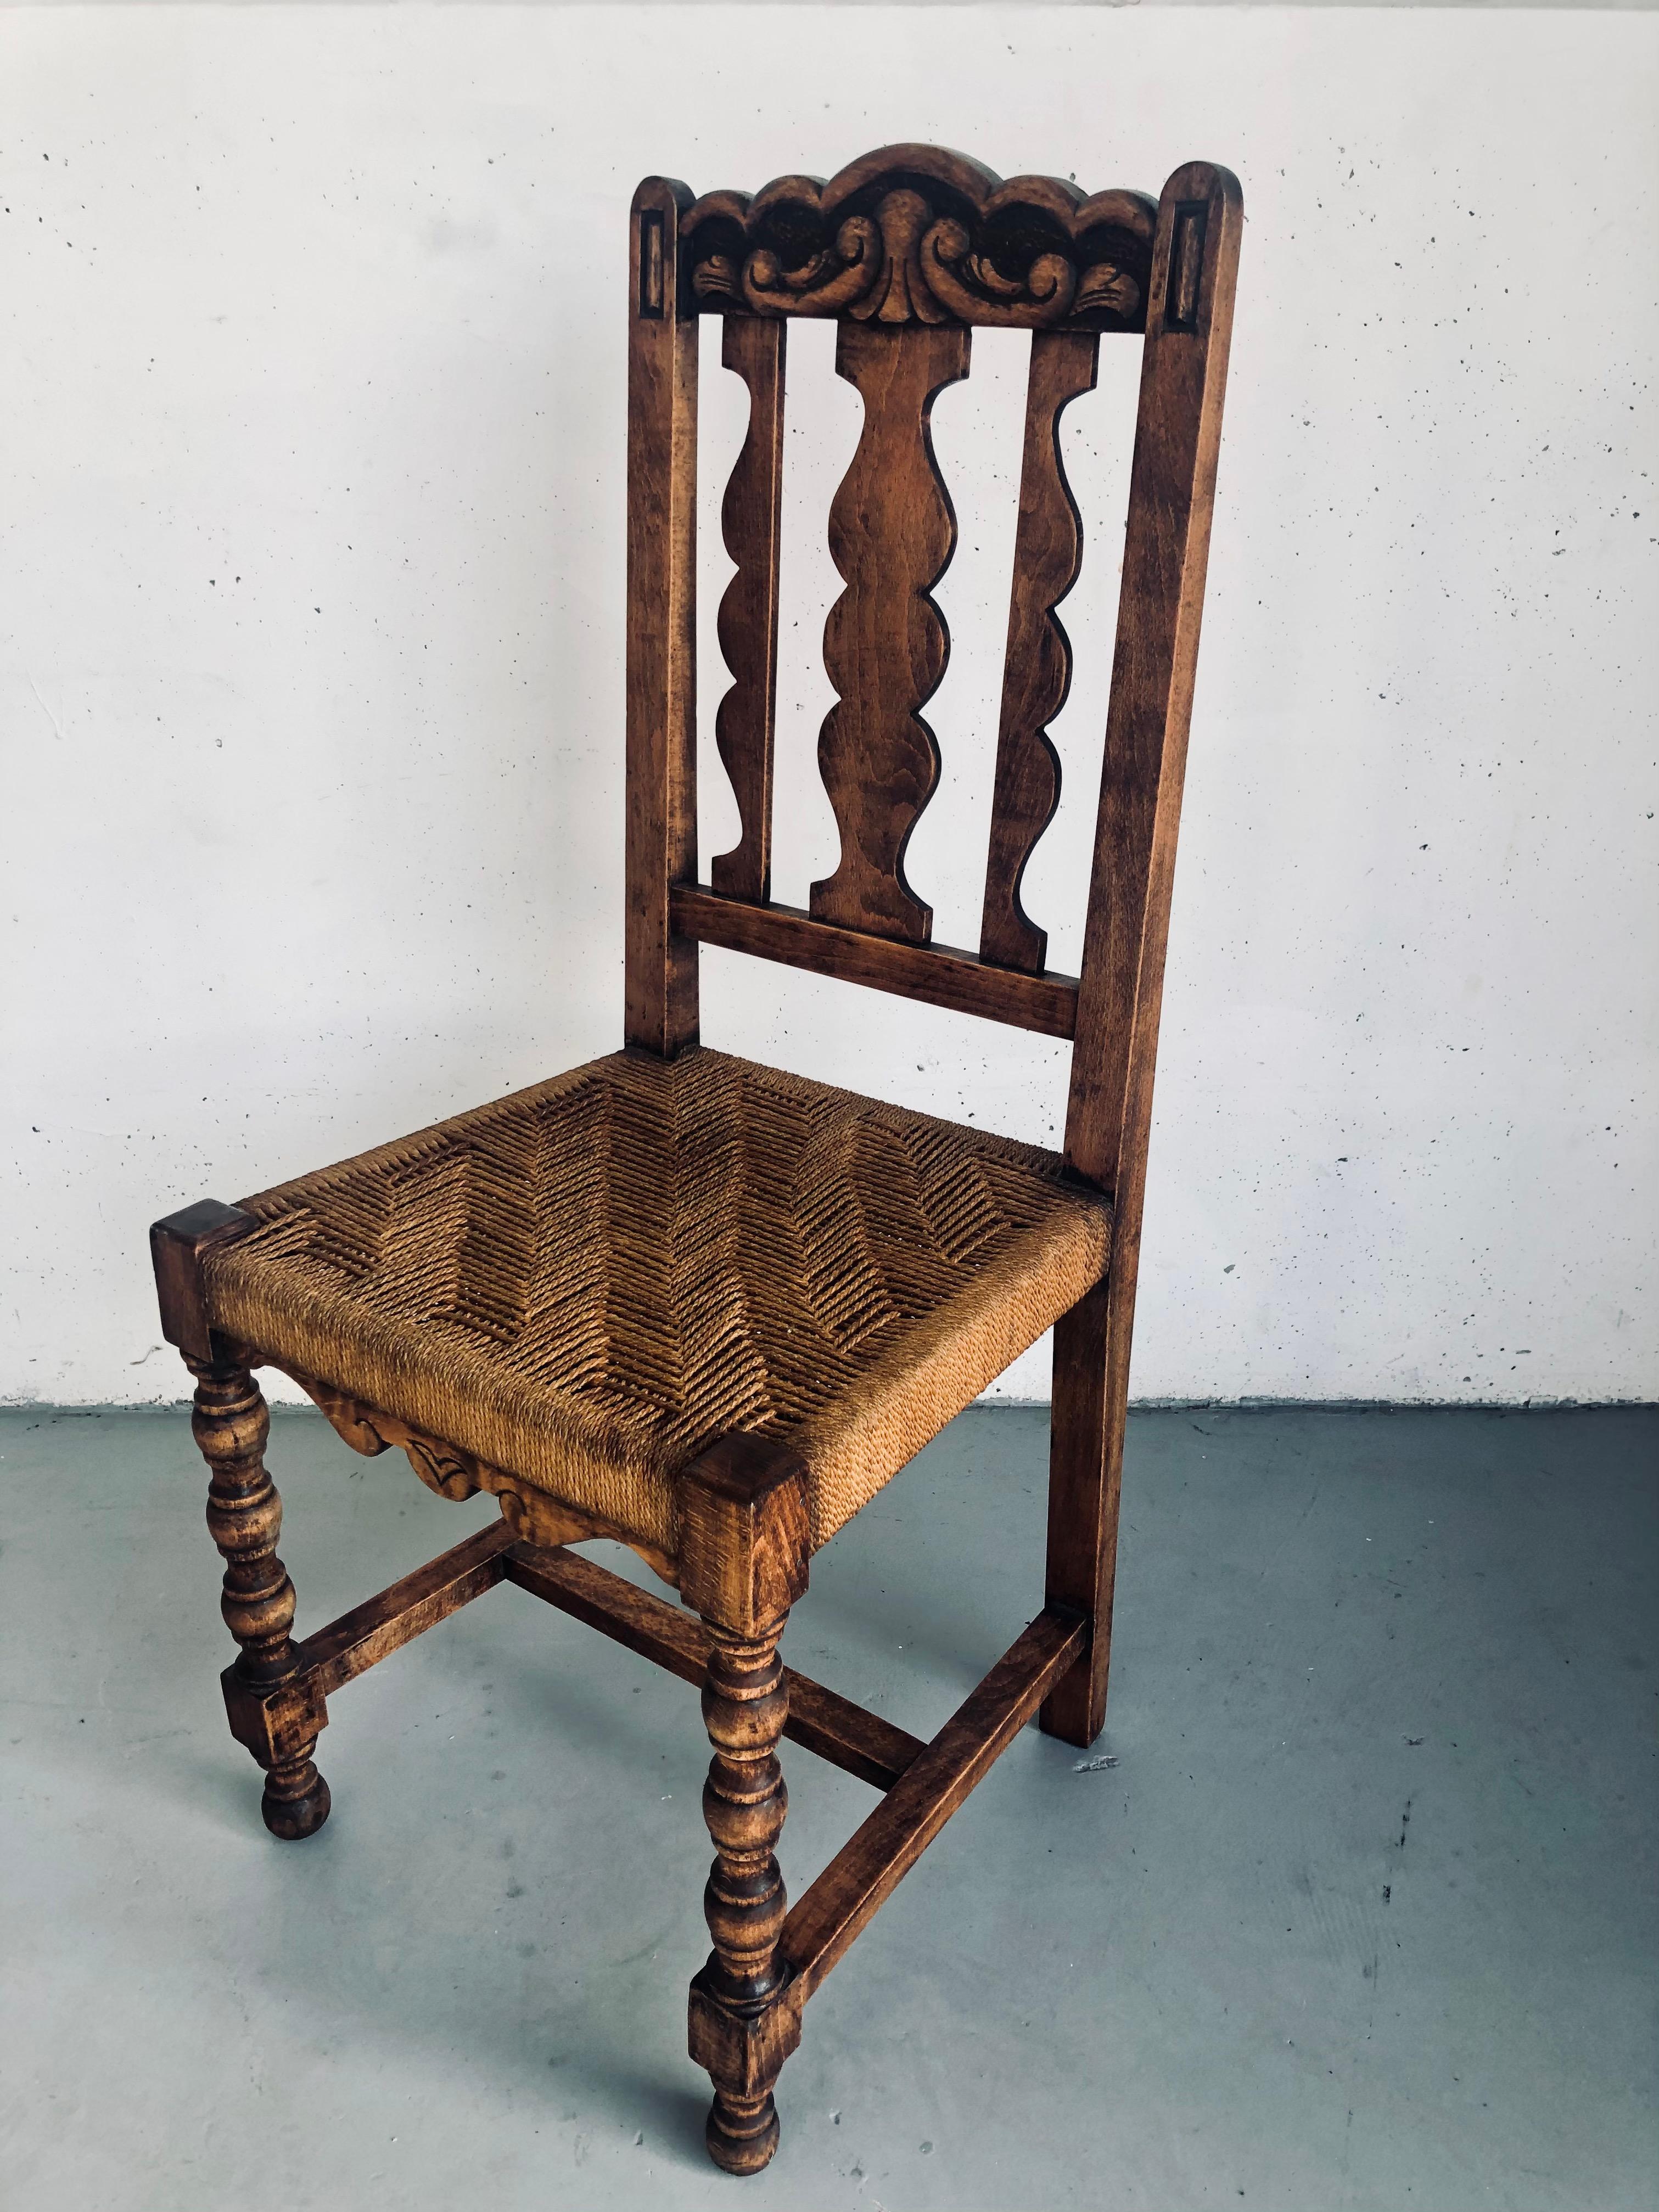 Chaise vintage en bois massif, pieds tournés et siège en corde tressée, Rare chaise espagnole en bois de style castillan, état impeccable, je dois dire qu'elle est encore plus belle en personne, c'est un meuble vraiment étonnant, unique et rare